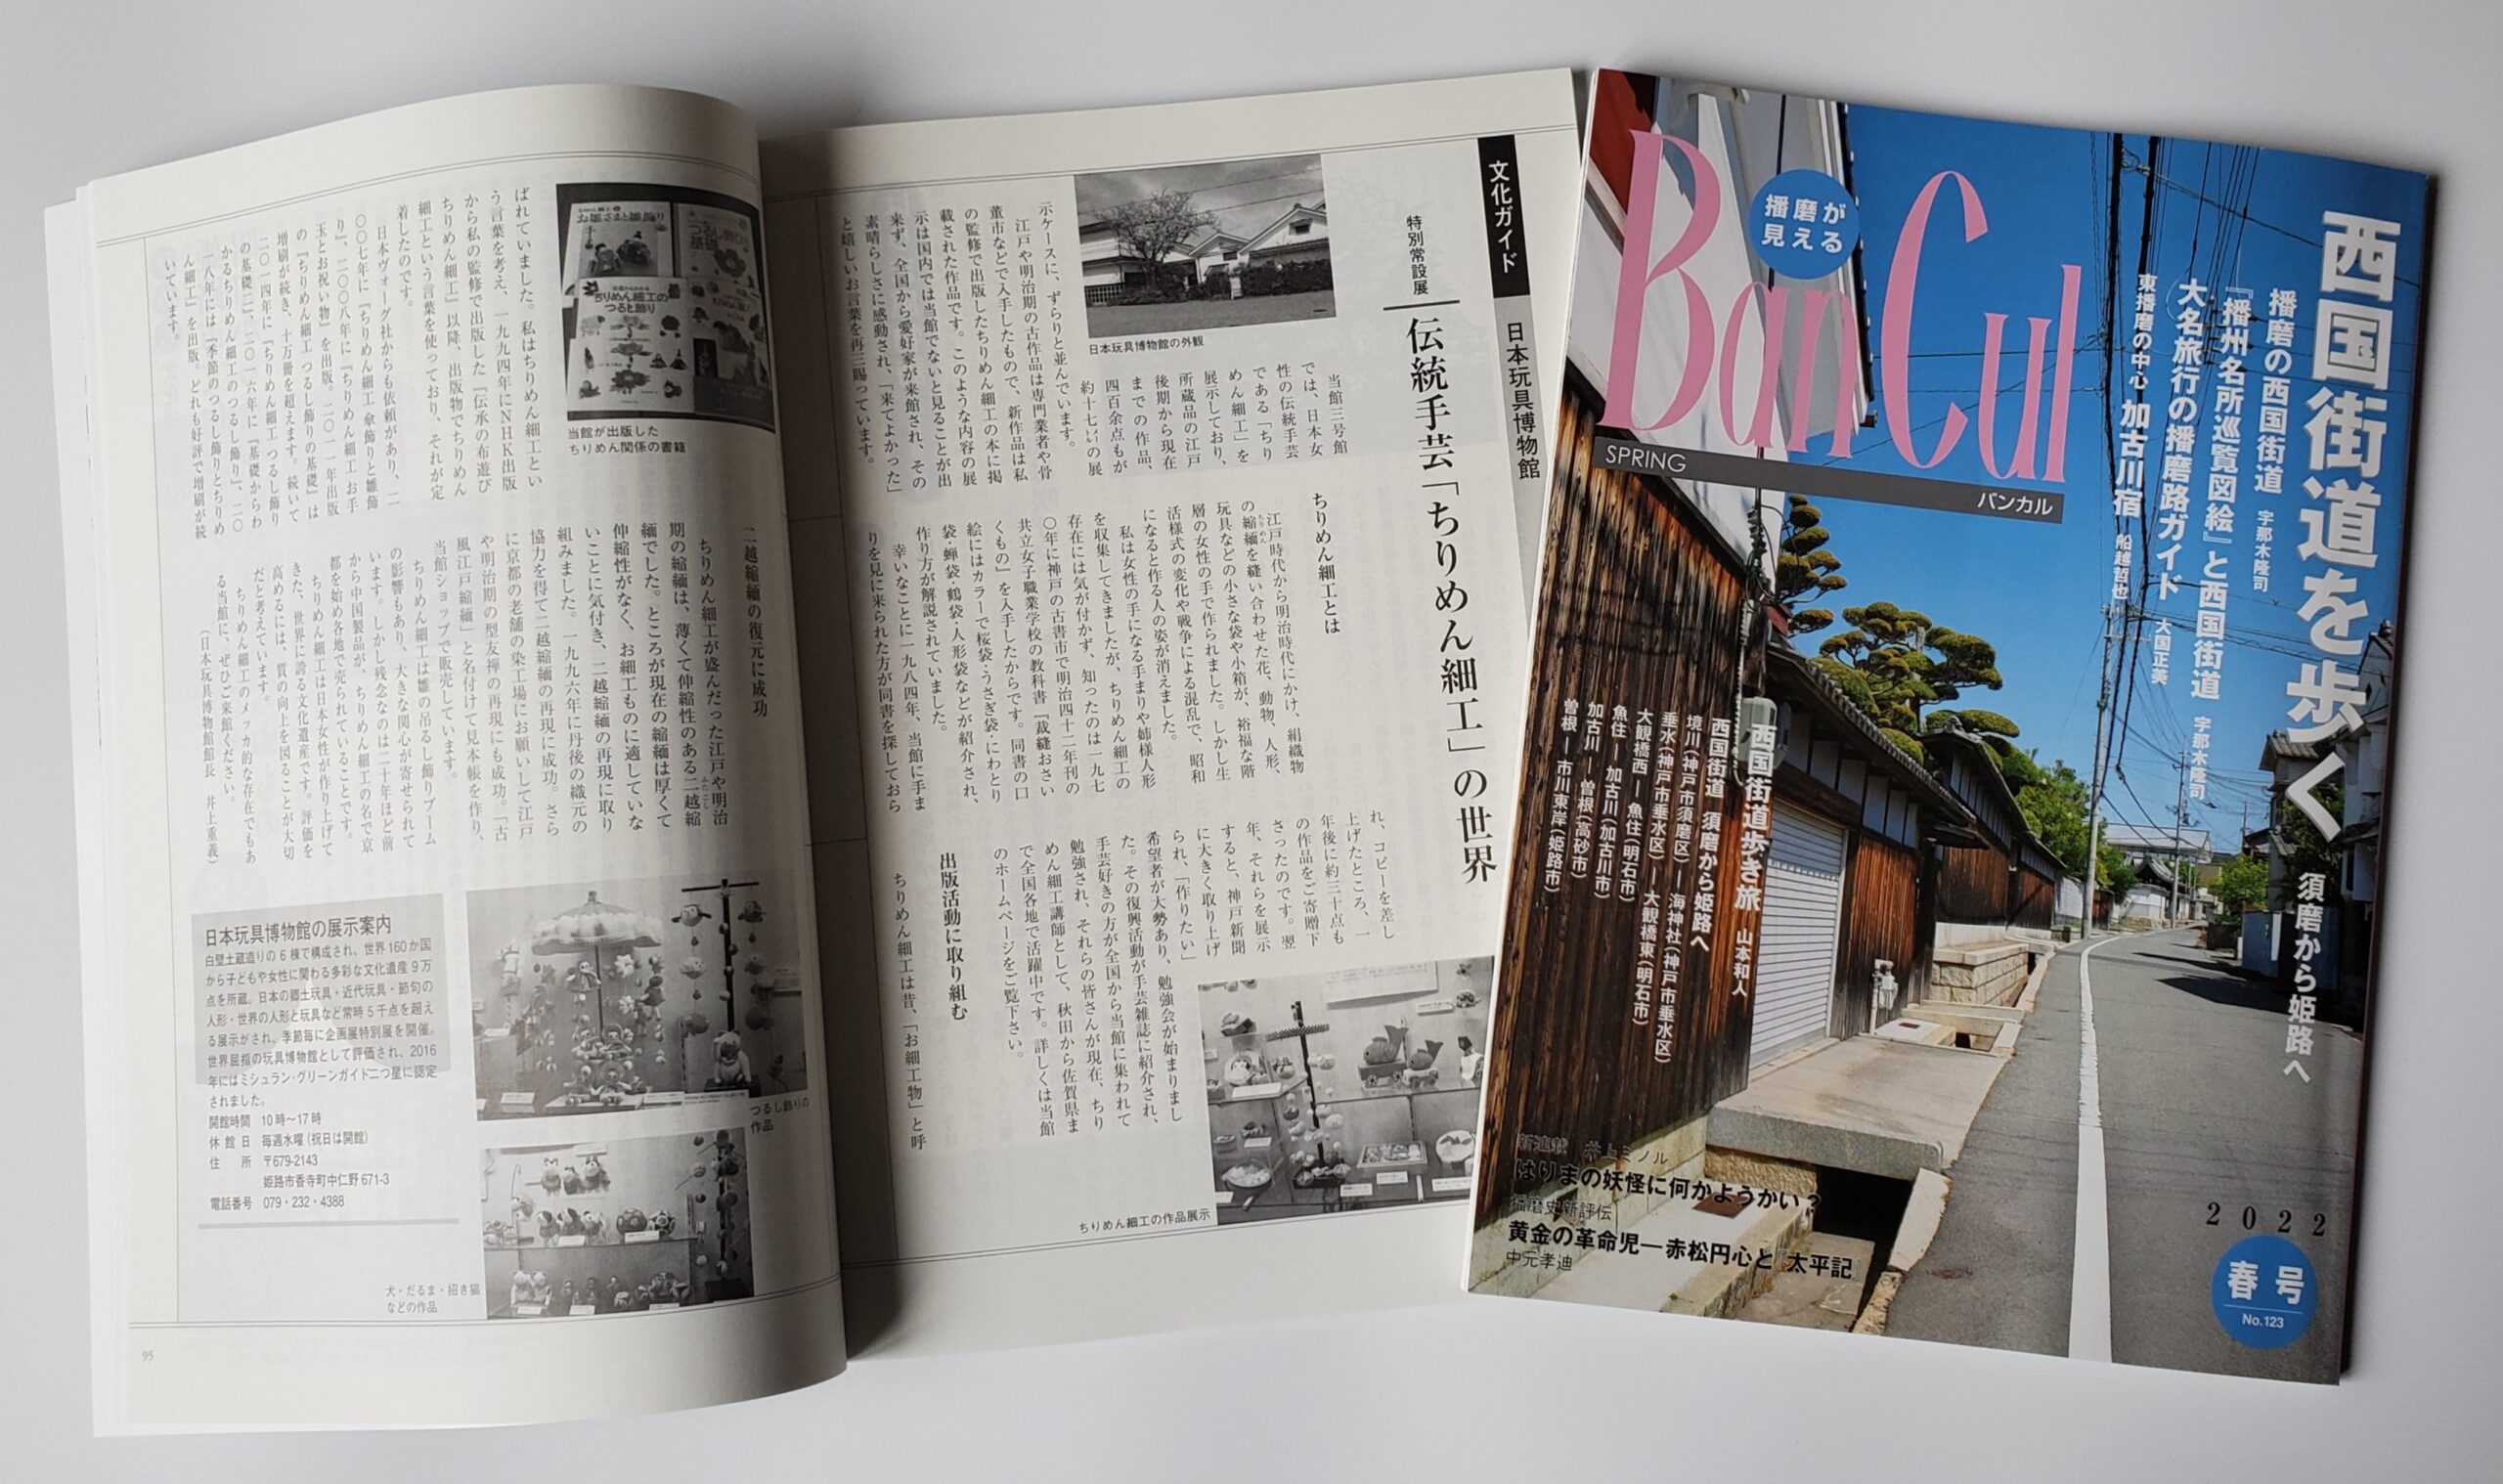 伝統手芸「ちりめん細工の世界」が『BanCul』2022春号(姫路市文化情報誌)に紹介されました。